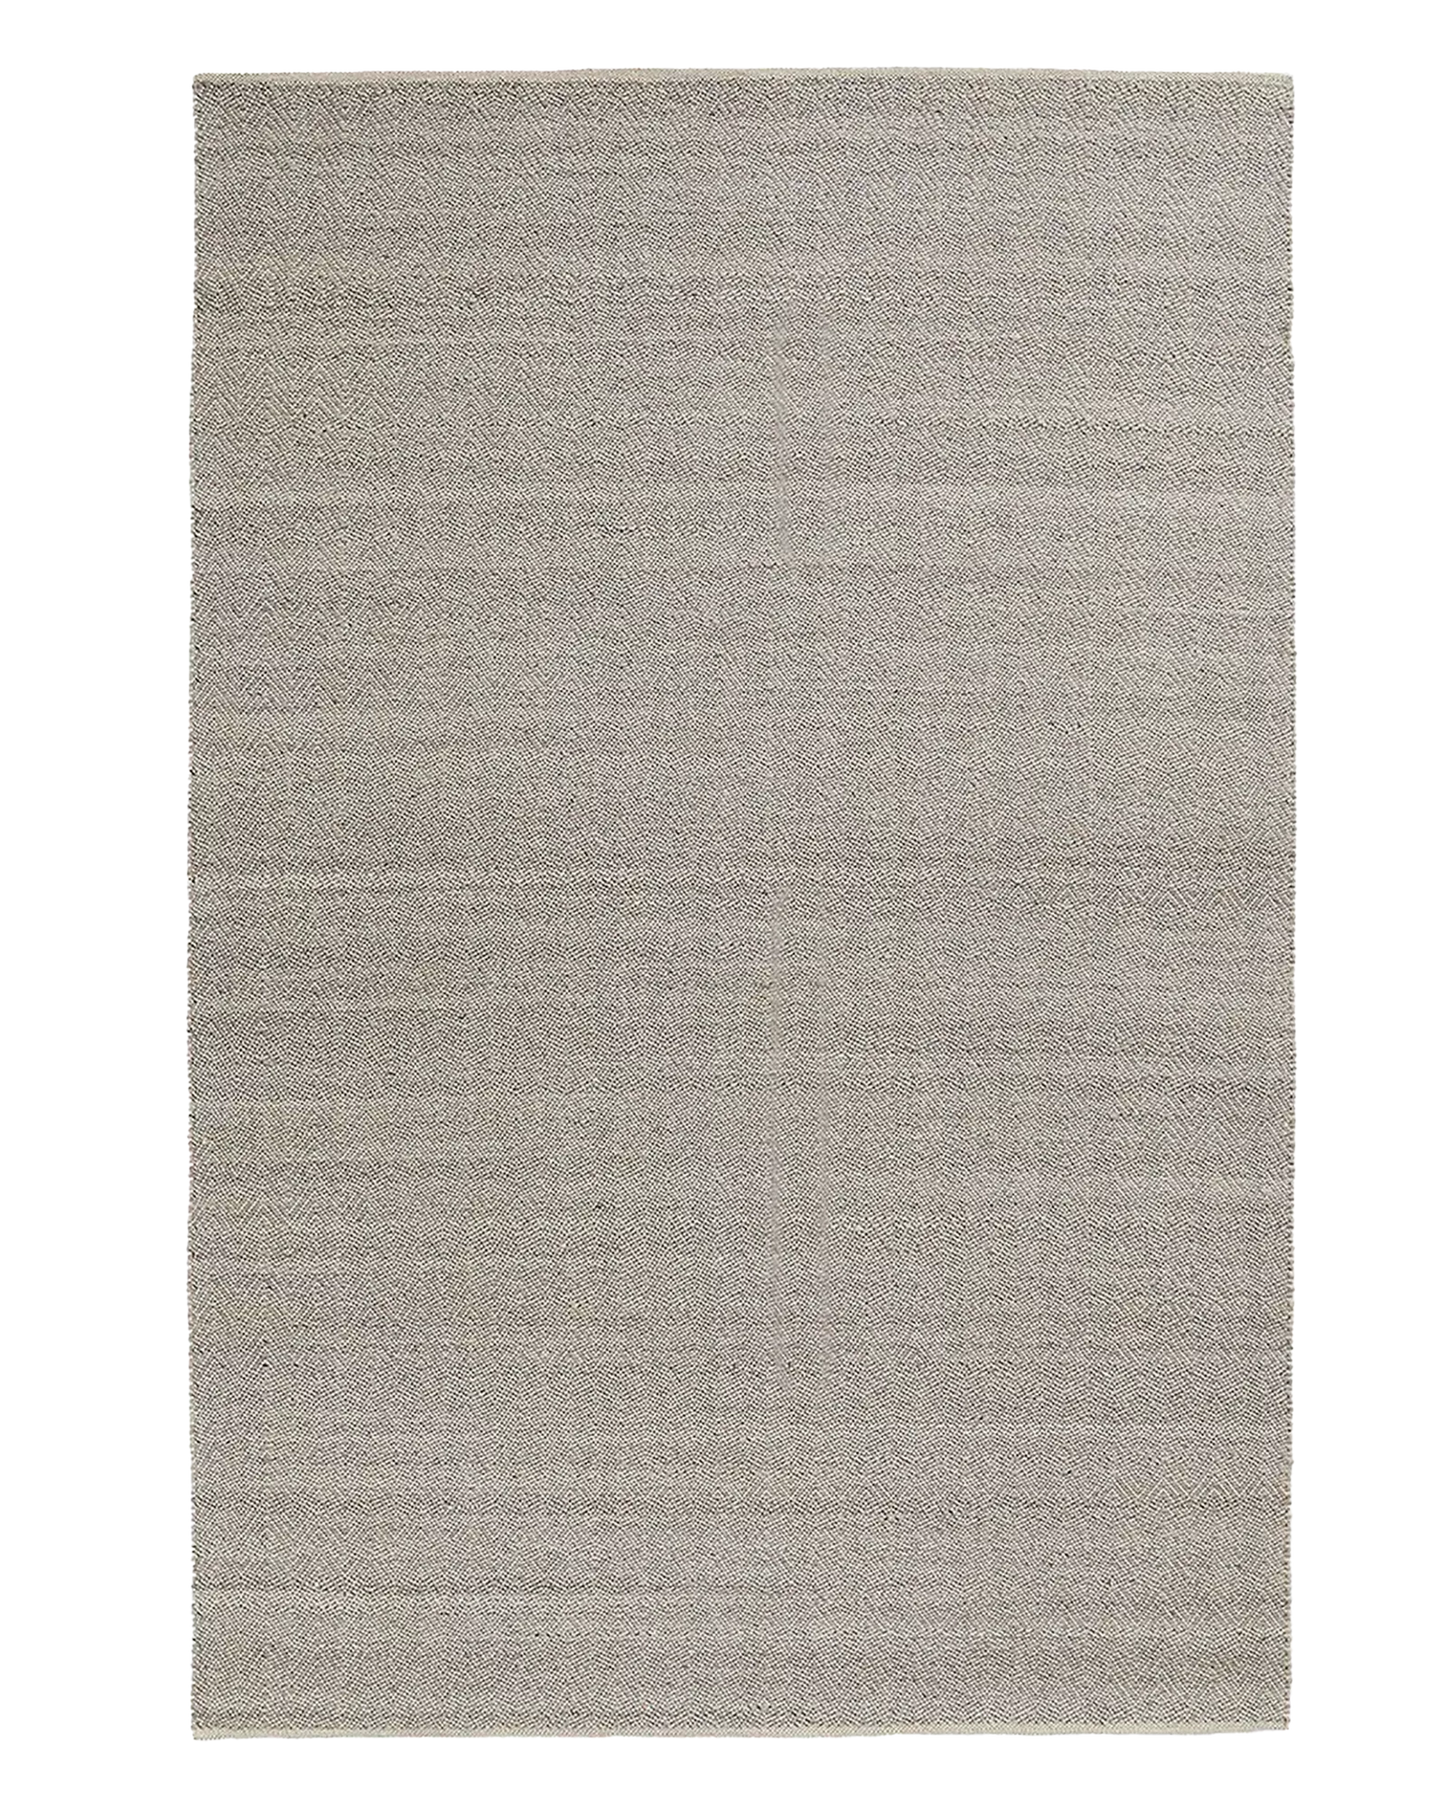 Weave Matterhorn wool rug basalt 200 x 300cm